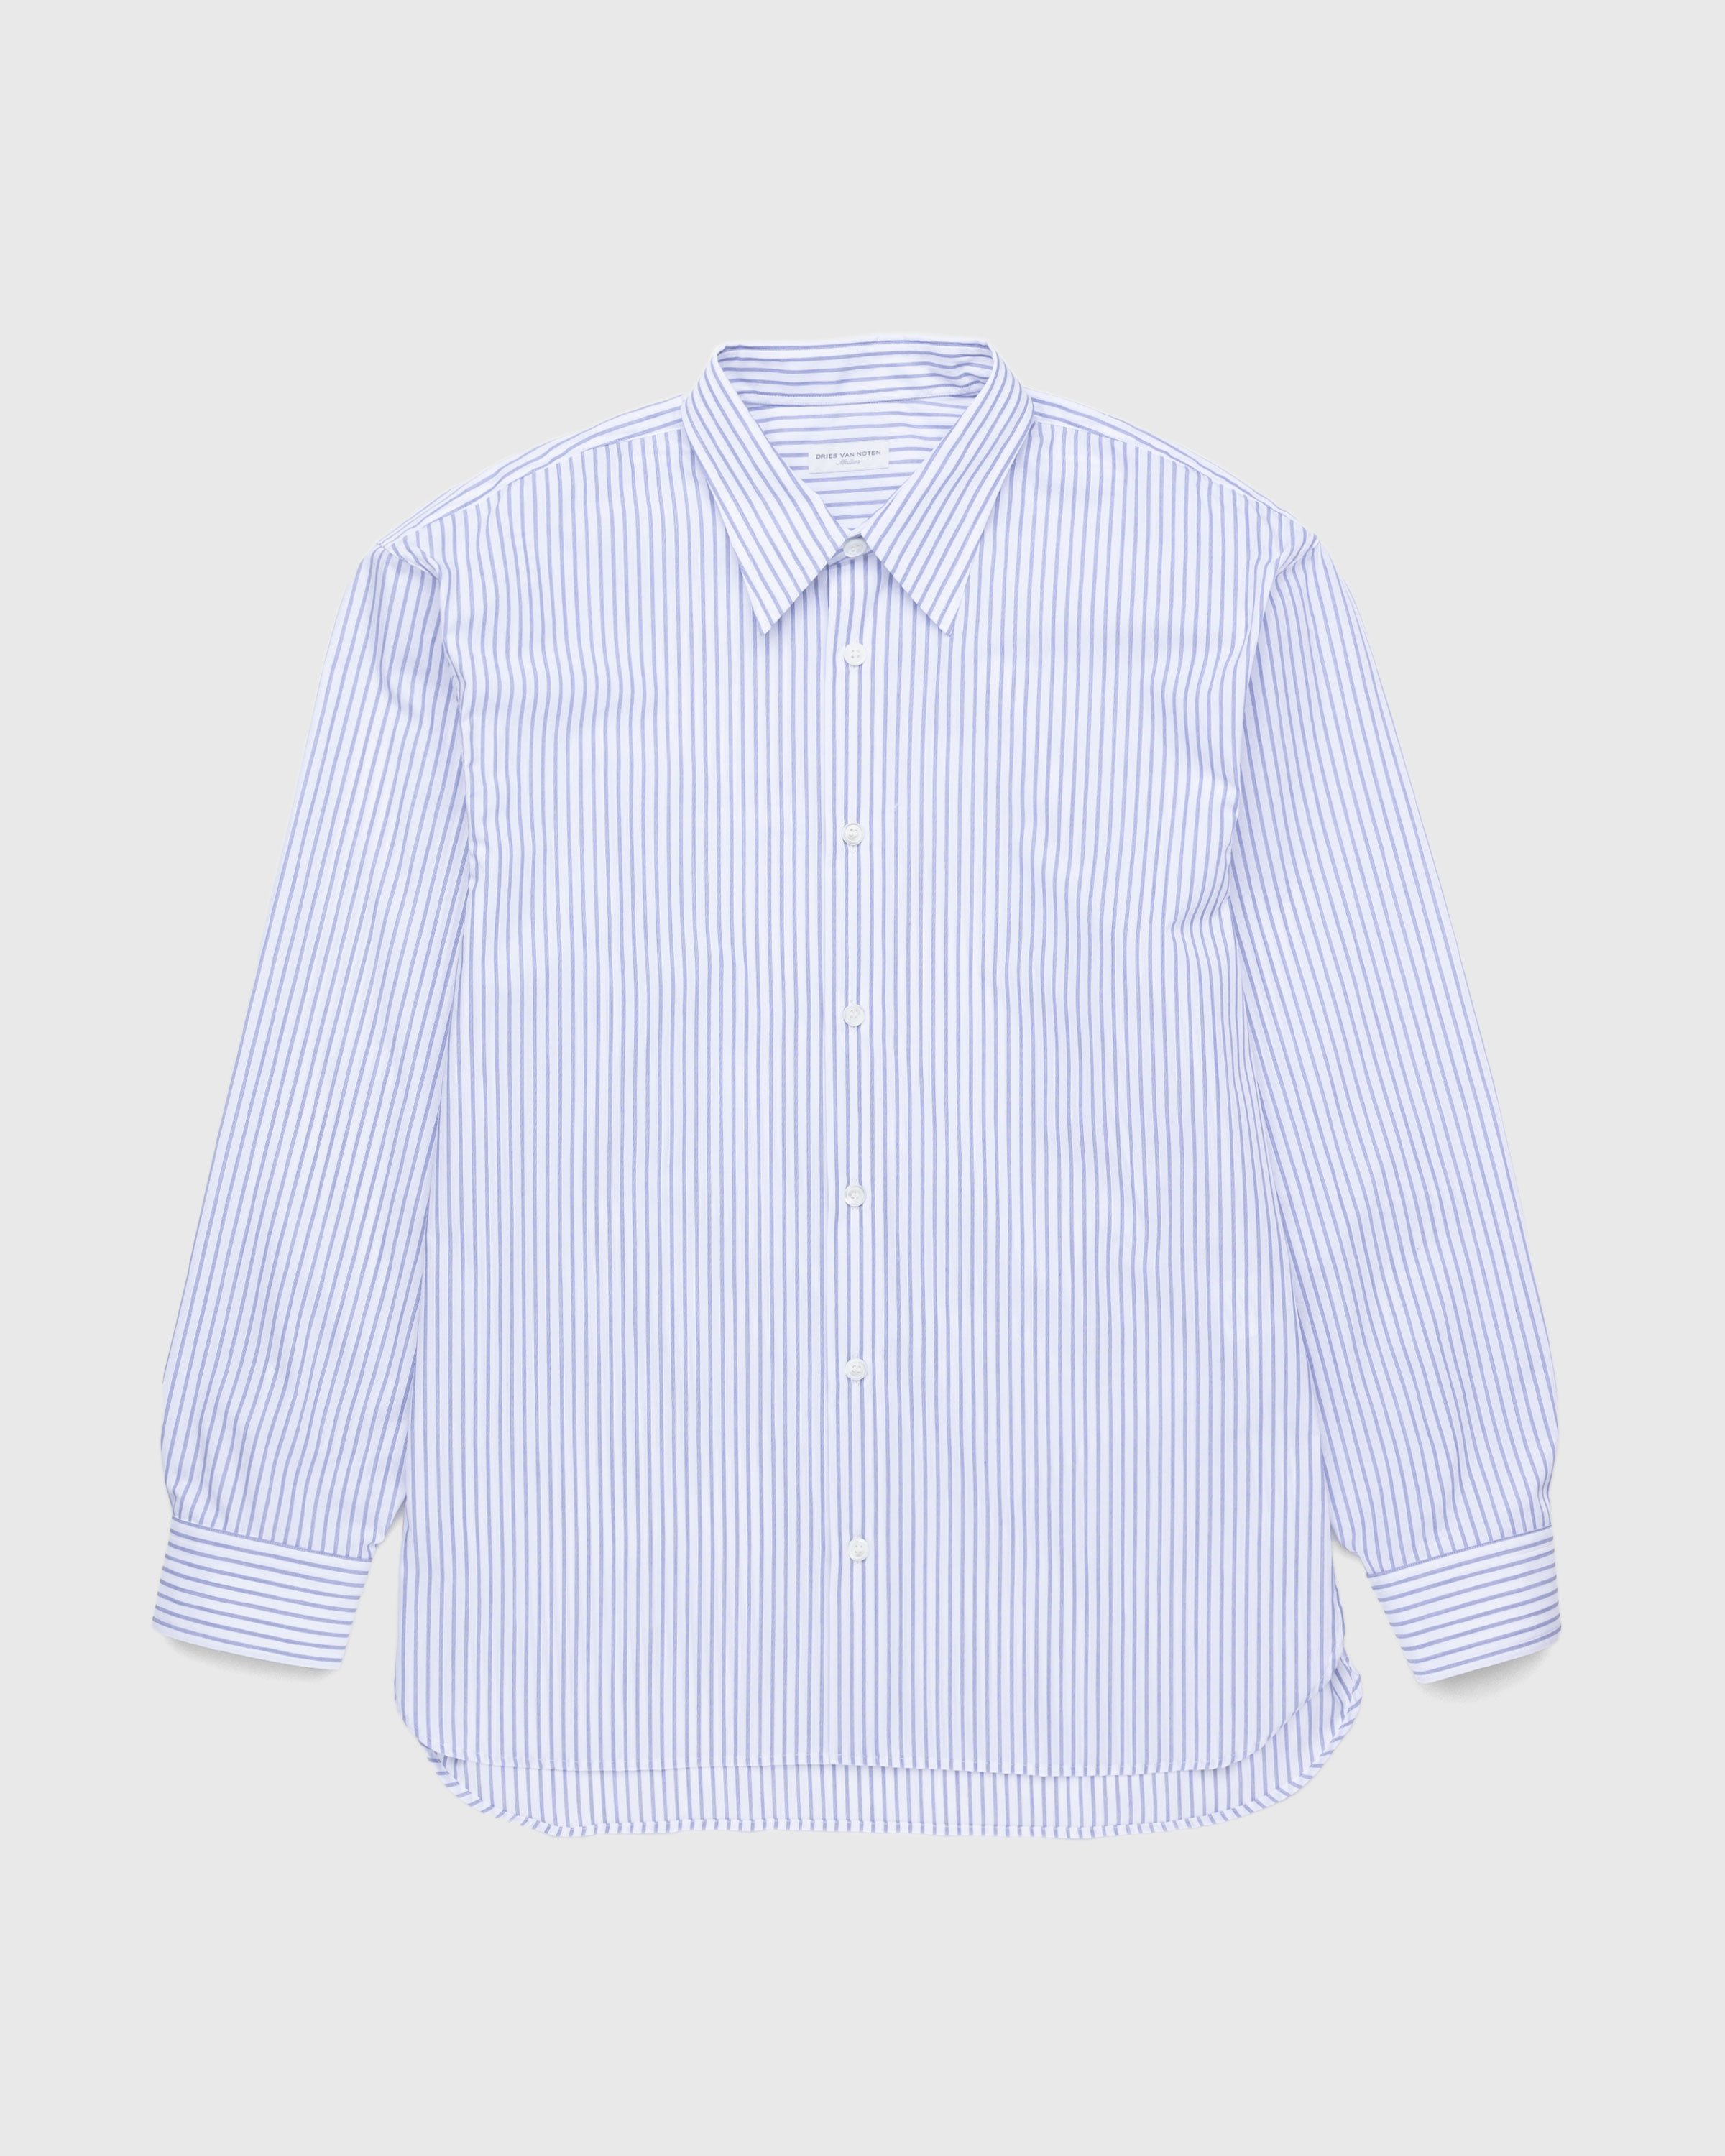 Dries van Noten - Croom Shirt White - Clothing - White - Image 1